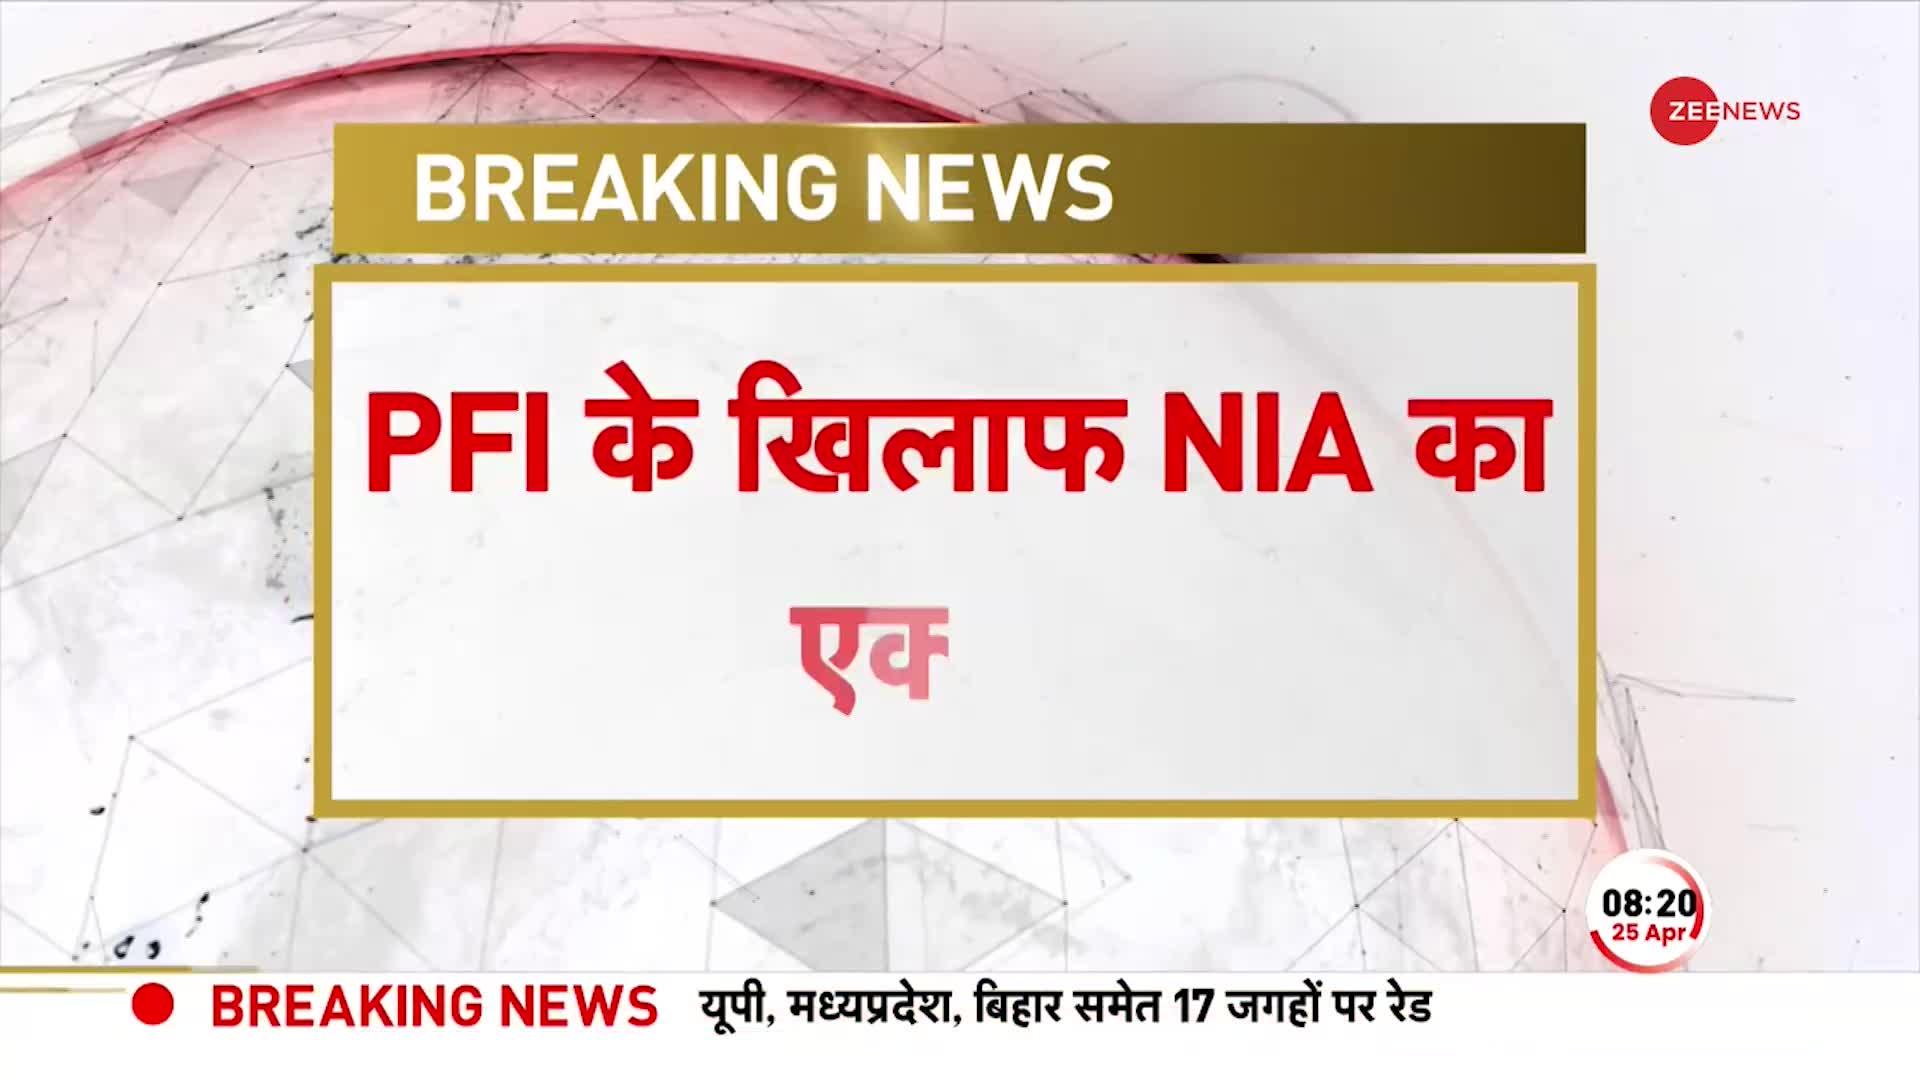 Breaking News: देश के कई राज्यों में PFI पर NIA की छापेमारी, यूपी-बिहार समेत 17 जगहों पर रेड